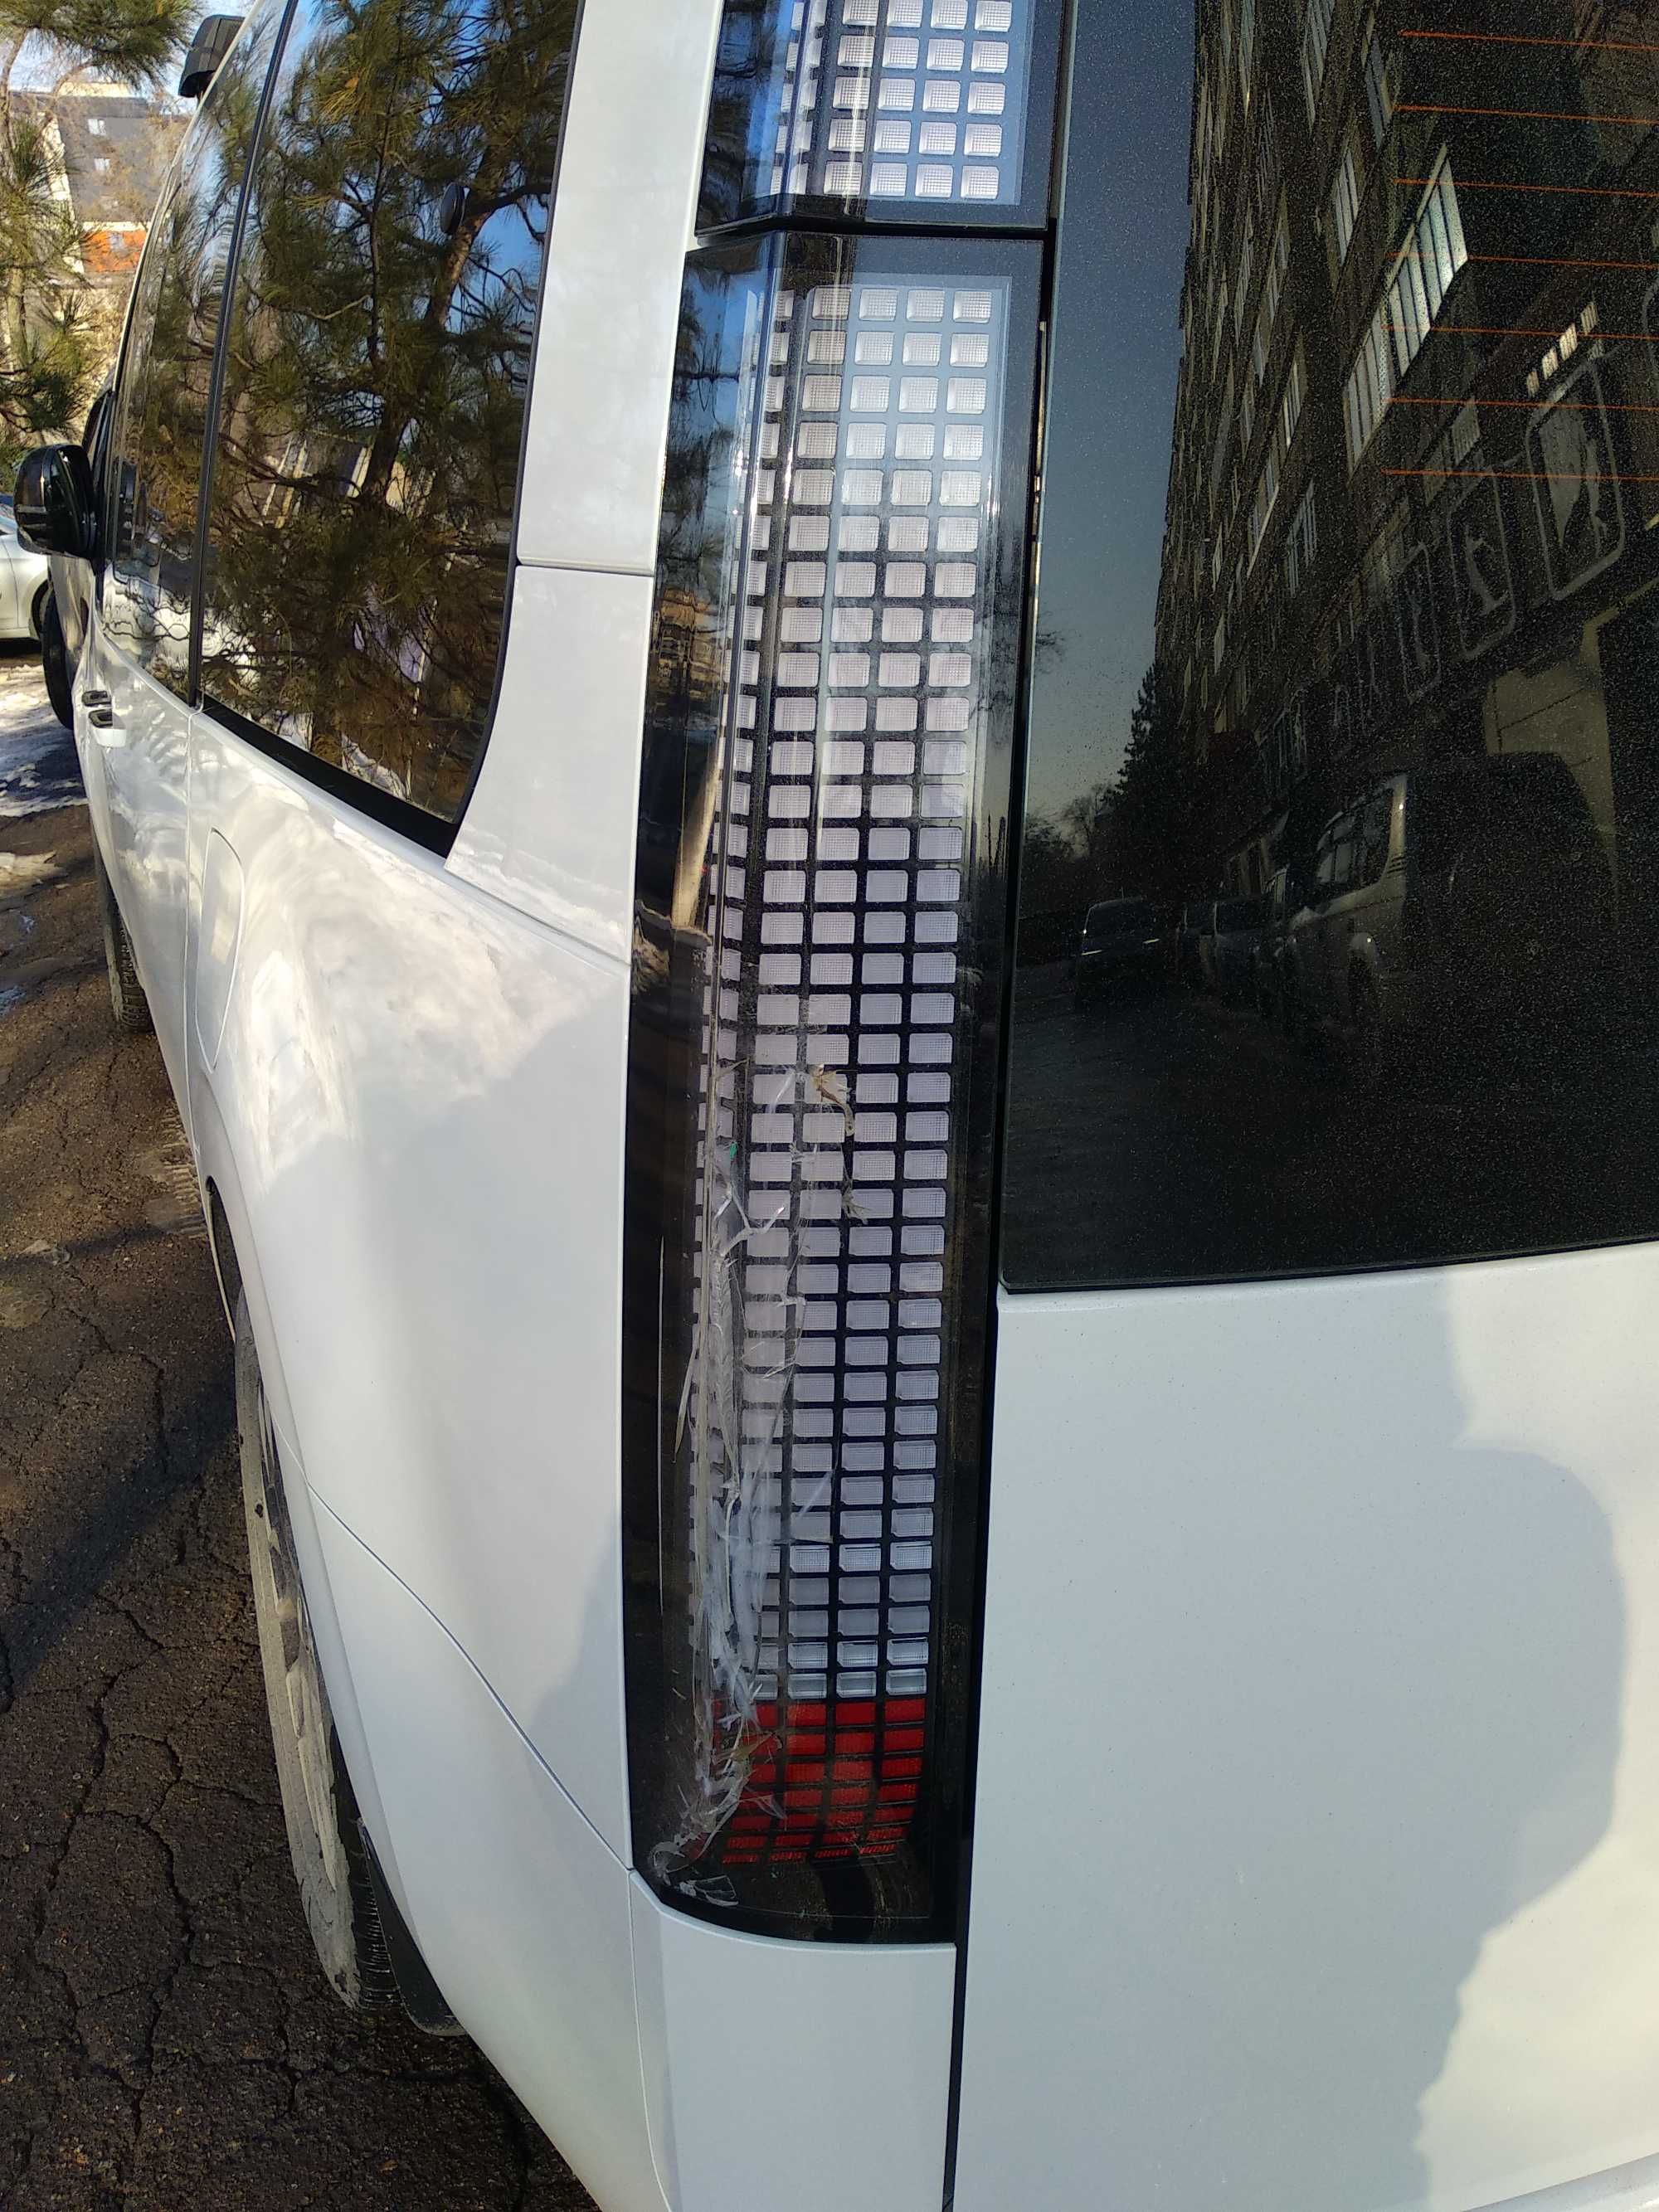 Фонарь задний, на Hyundai Staria led, стоп, на стекле повреждения.